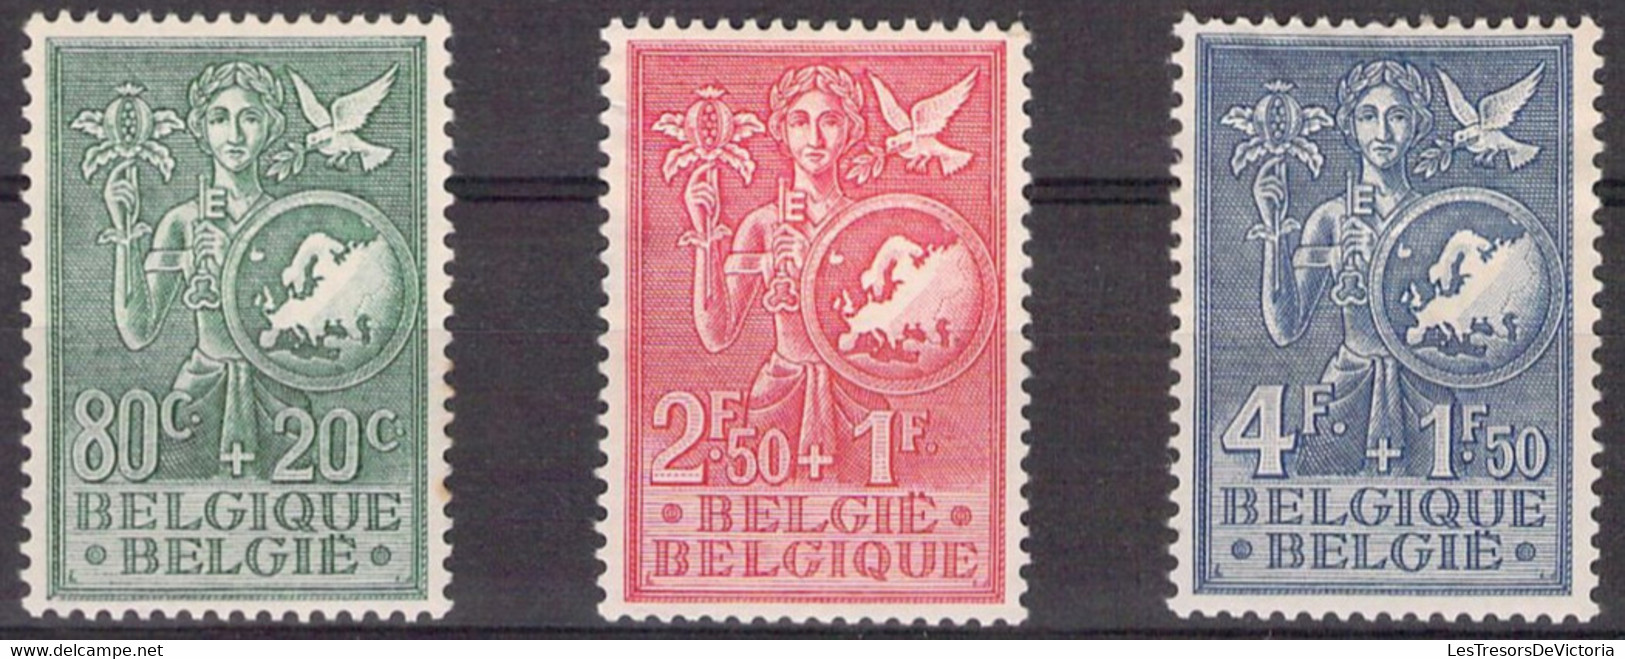 Belgique -  COB 927/29 * - 1953 - Cote 45 COB 2022 - Aminci Sur Le 929 - Prix De Départ 5 Euros - Nuevos